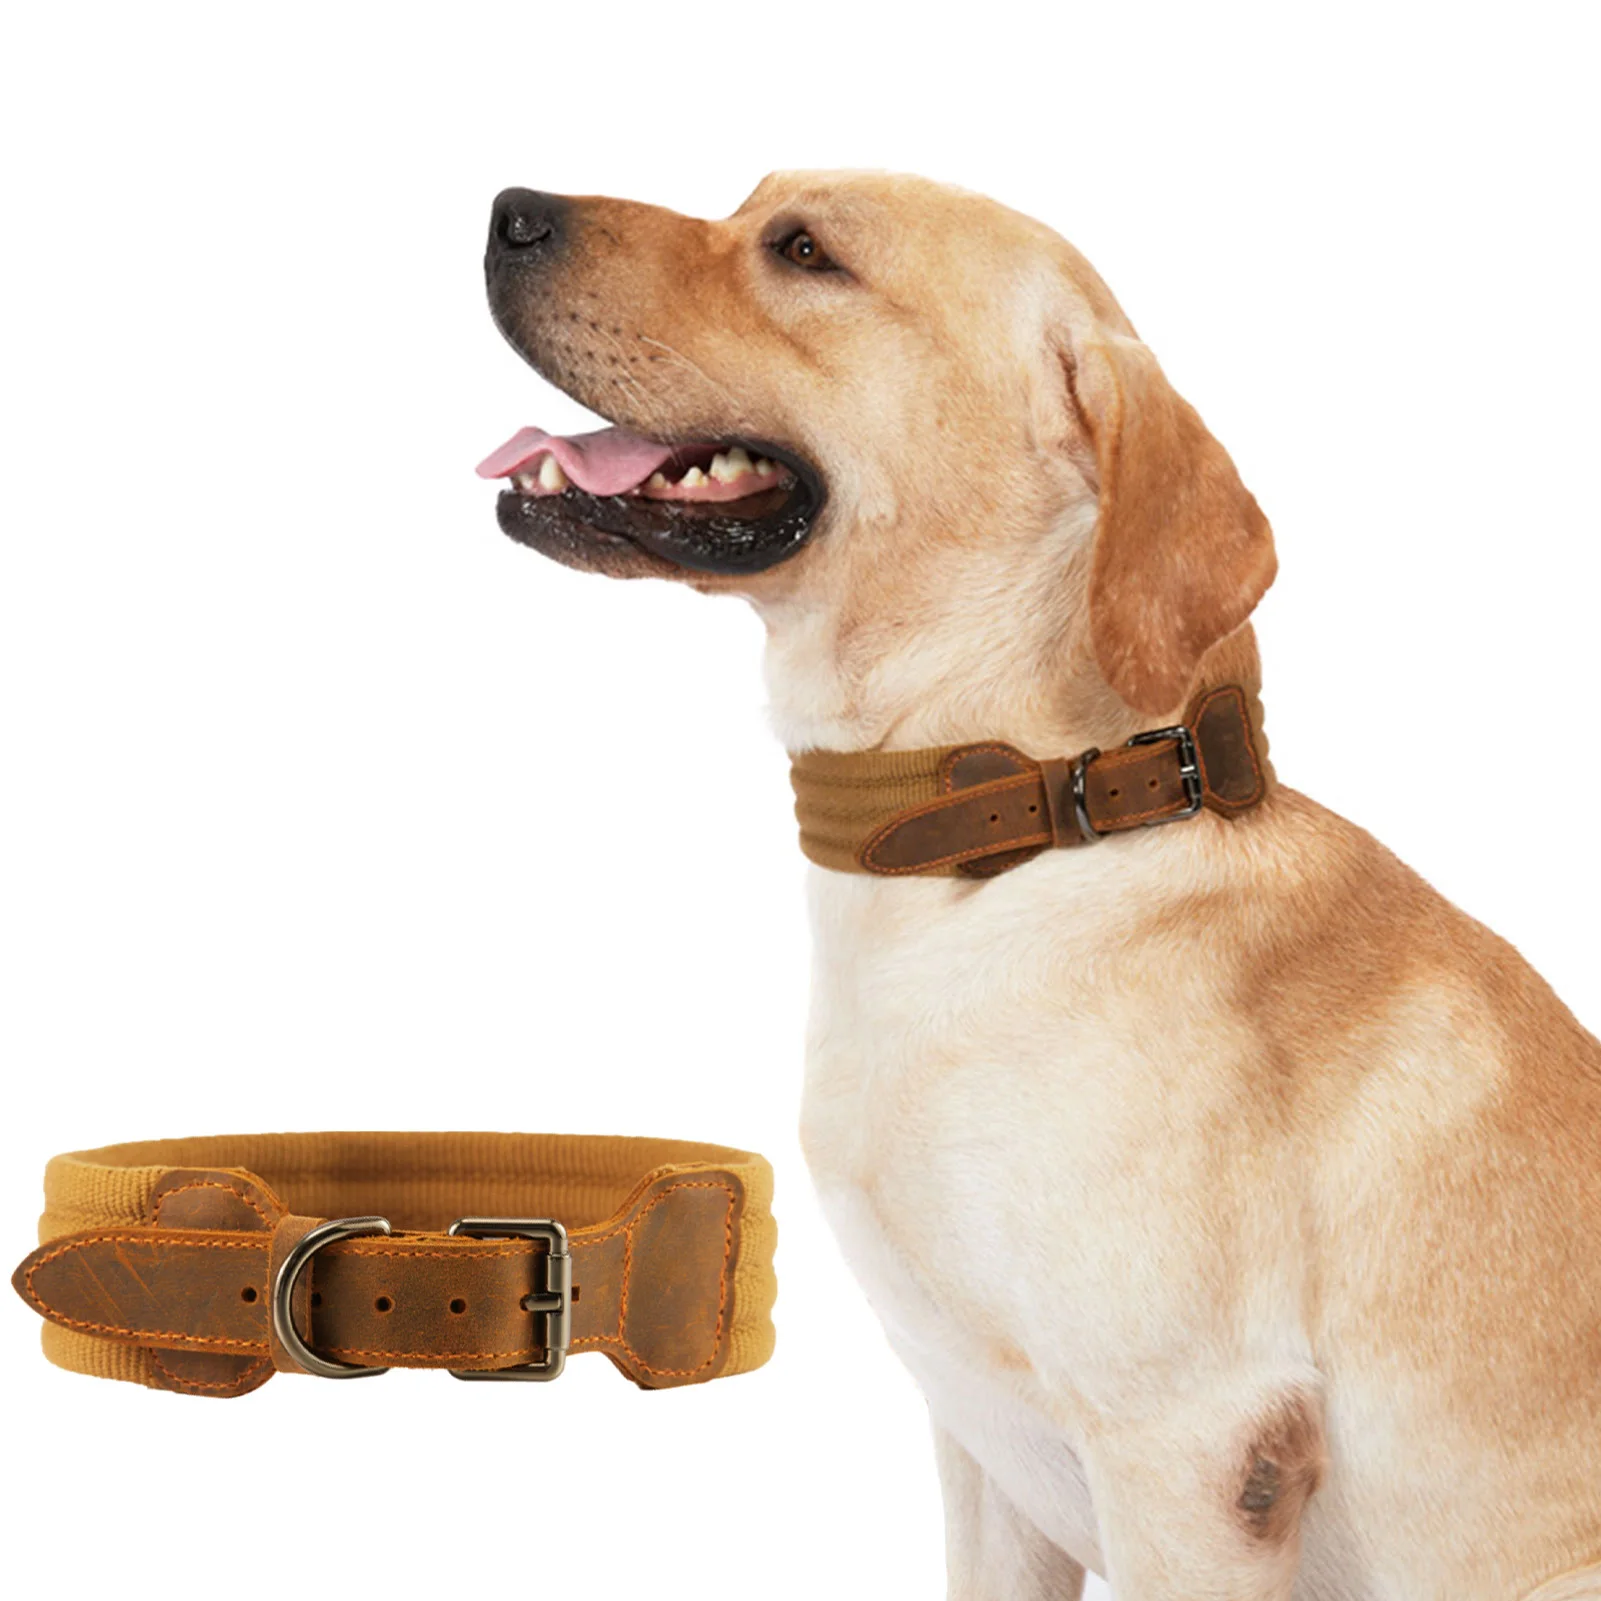 

Кожаный ошейник для собак, классический регулируемый, сверхмощный, с металлической пряжкой, подходит для дрессировки, ходьбы и дрессировки